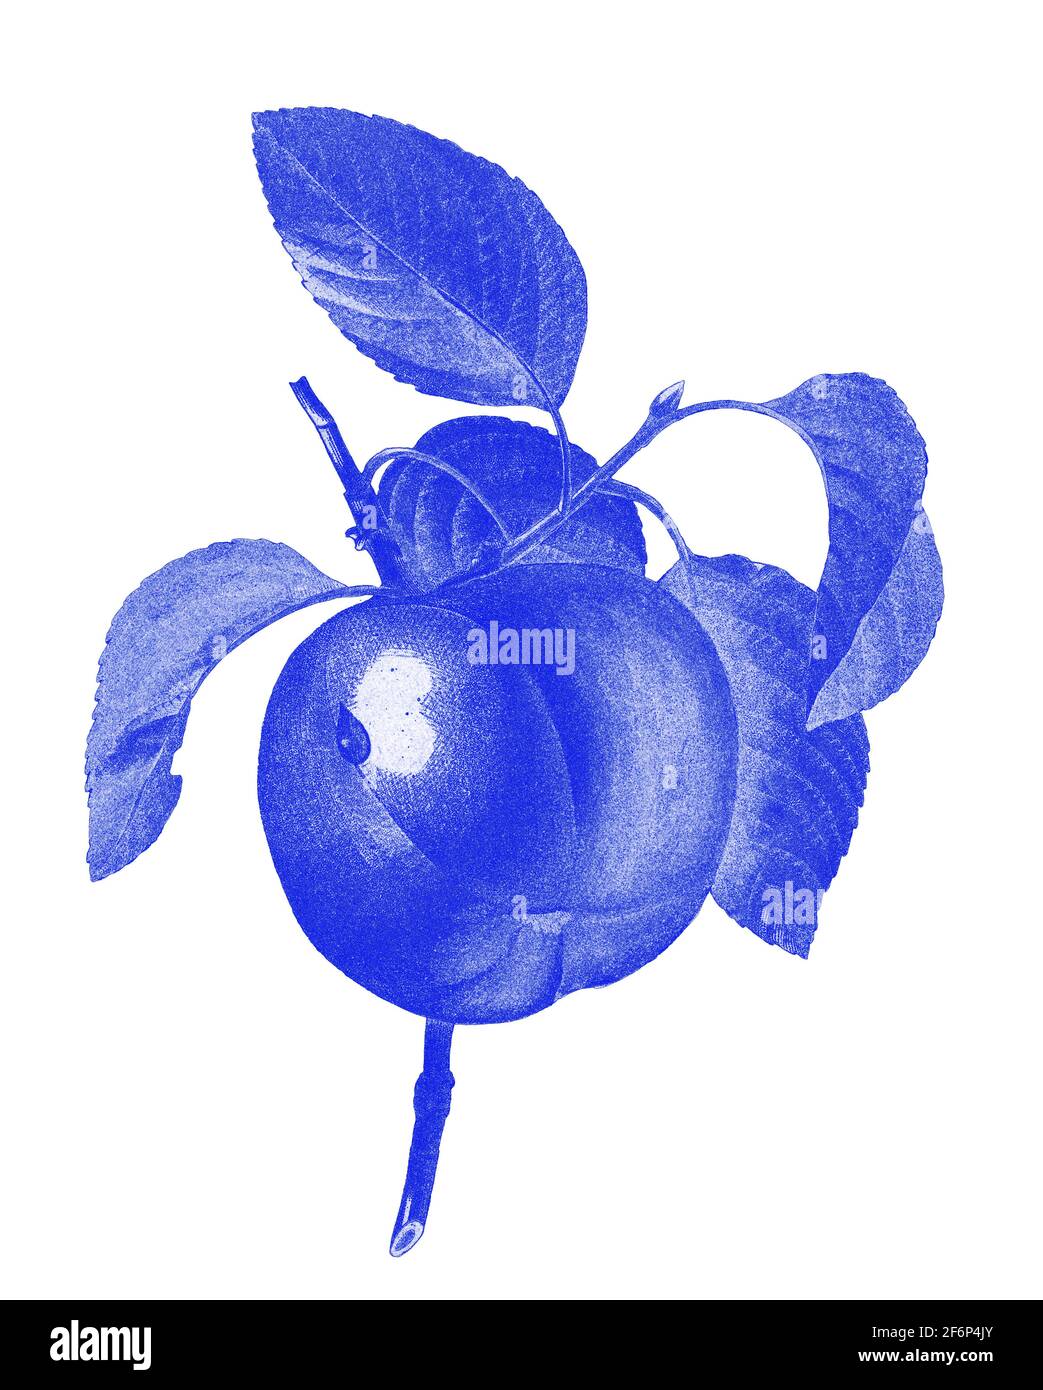 Digital verbesserte Abbildung einer handgemalten Gravurillustration eines Calville Blanc (Apfel) aus dem 19th. Jahrhundert von Pierre-Joseph Redoute. Veröffentlicht in Choi Stockfoto